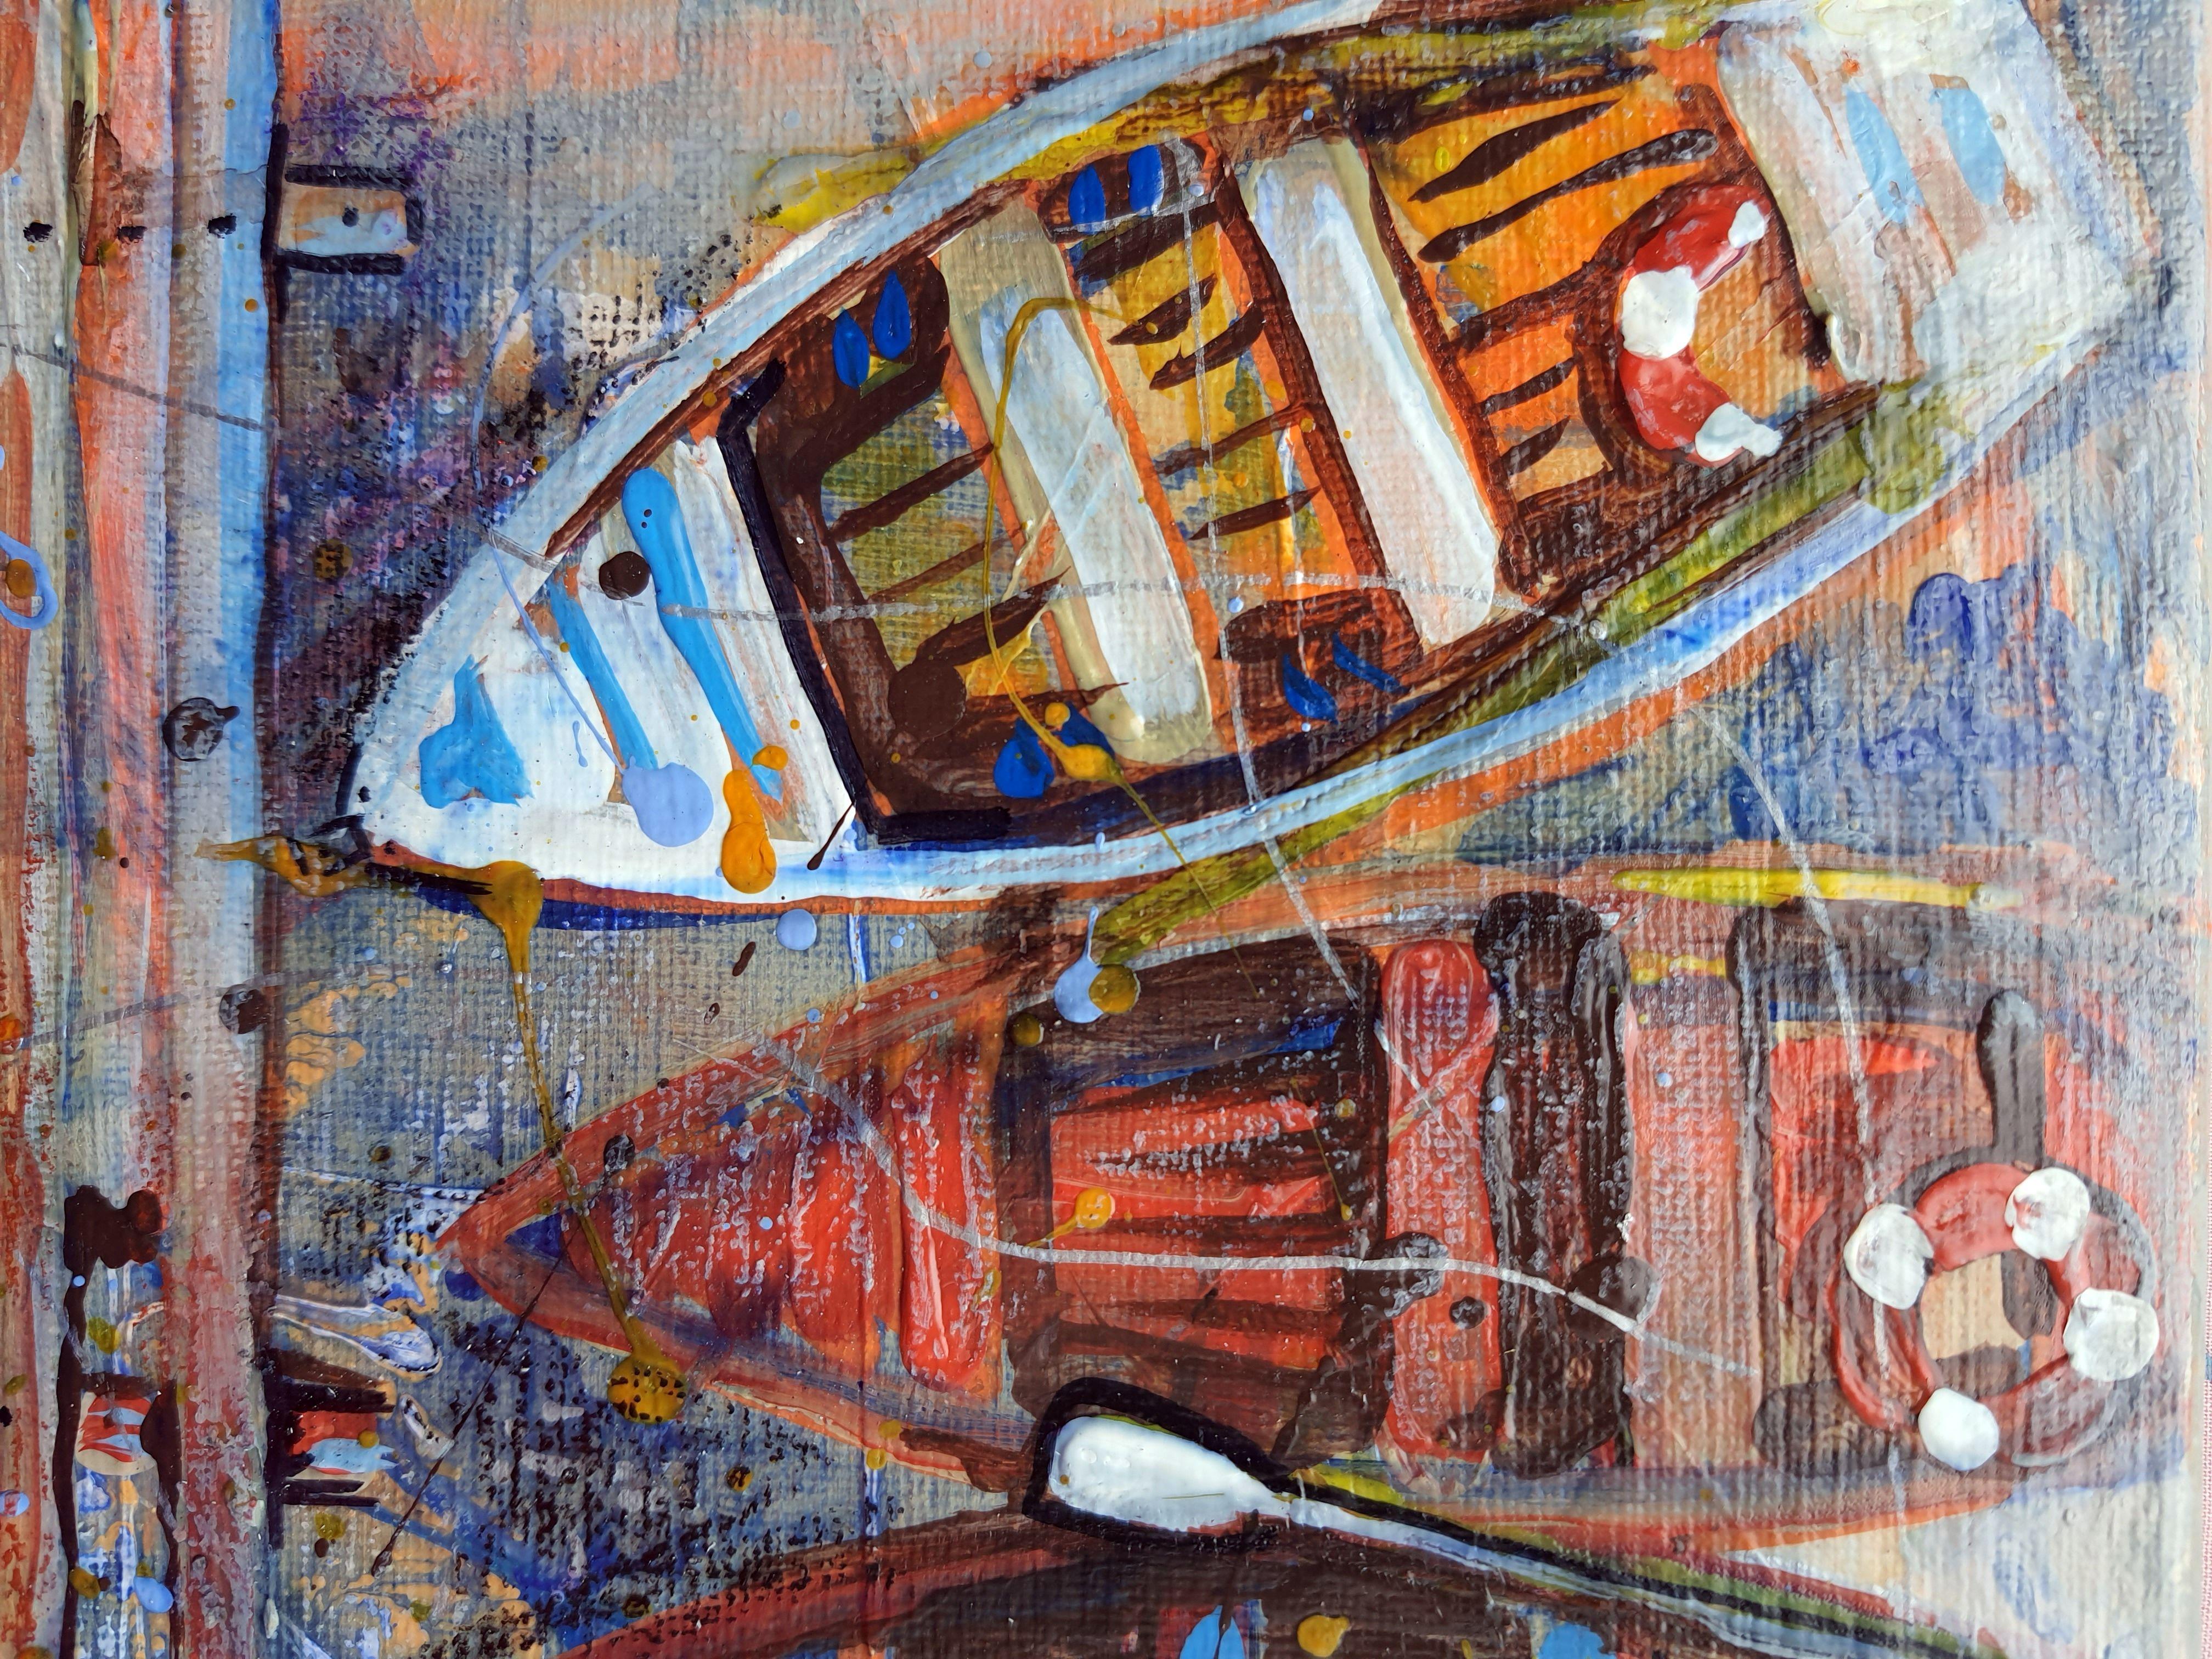 Multicolored Boats - Painting by RAKHMET REDZHEPOV (RAMZI)